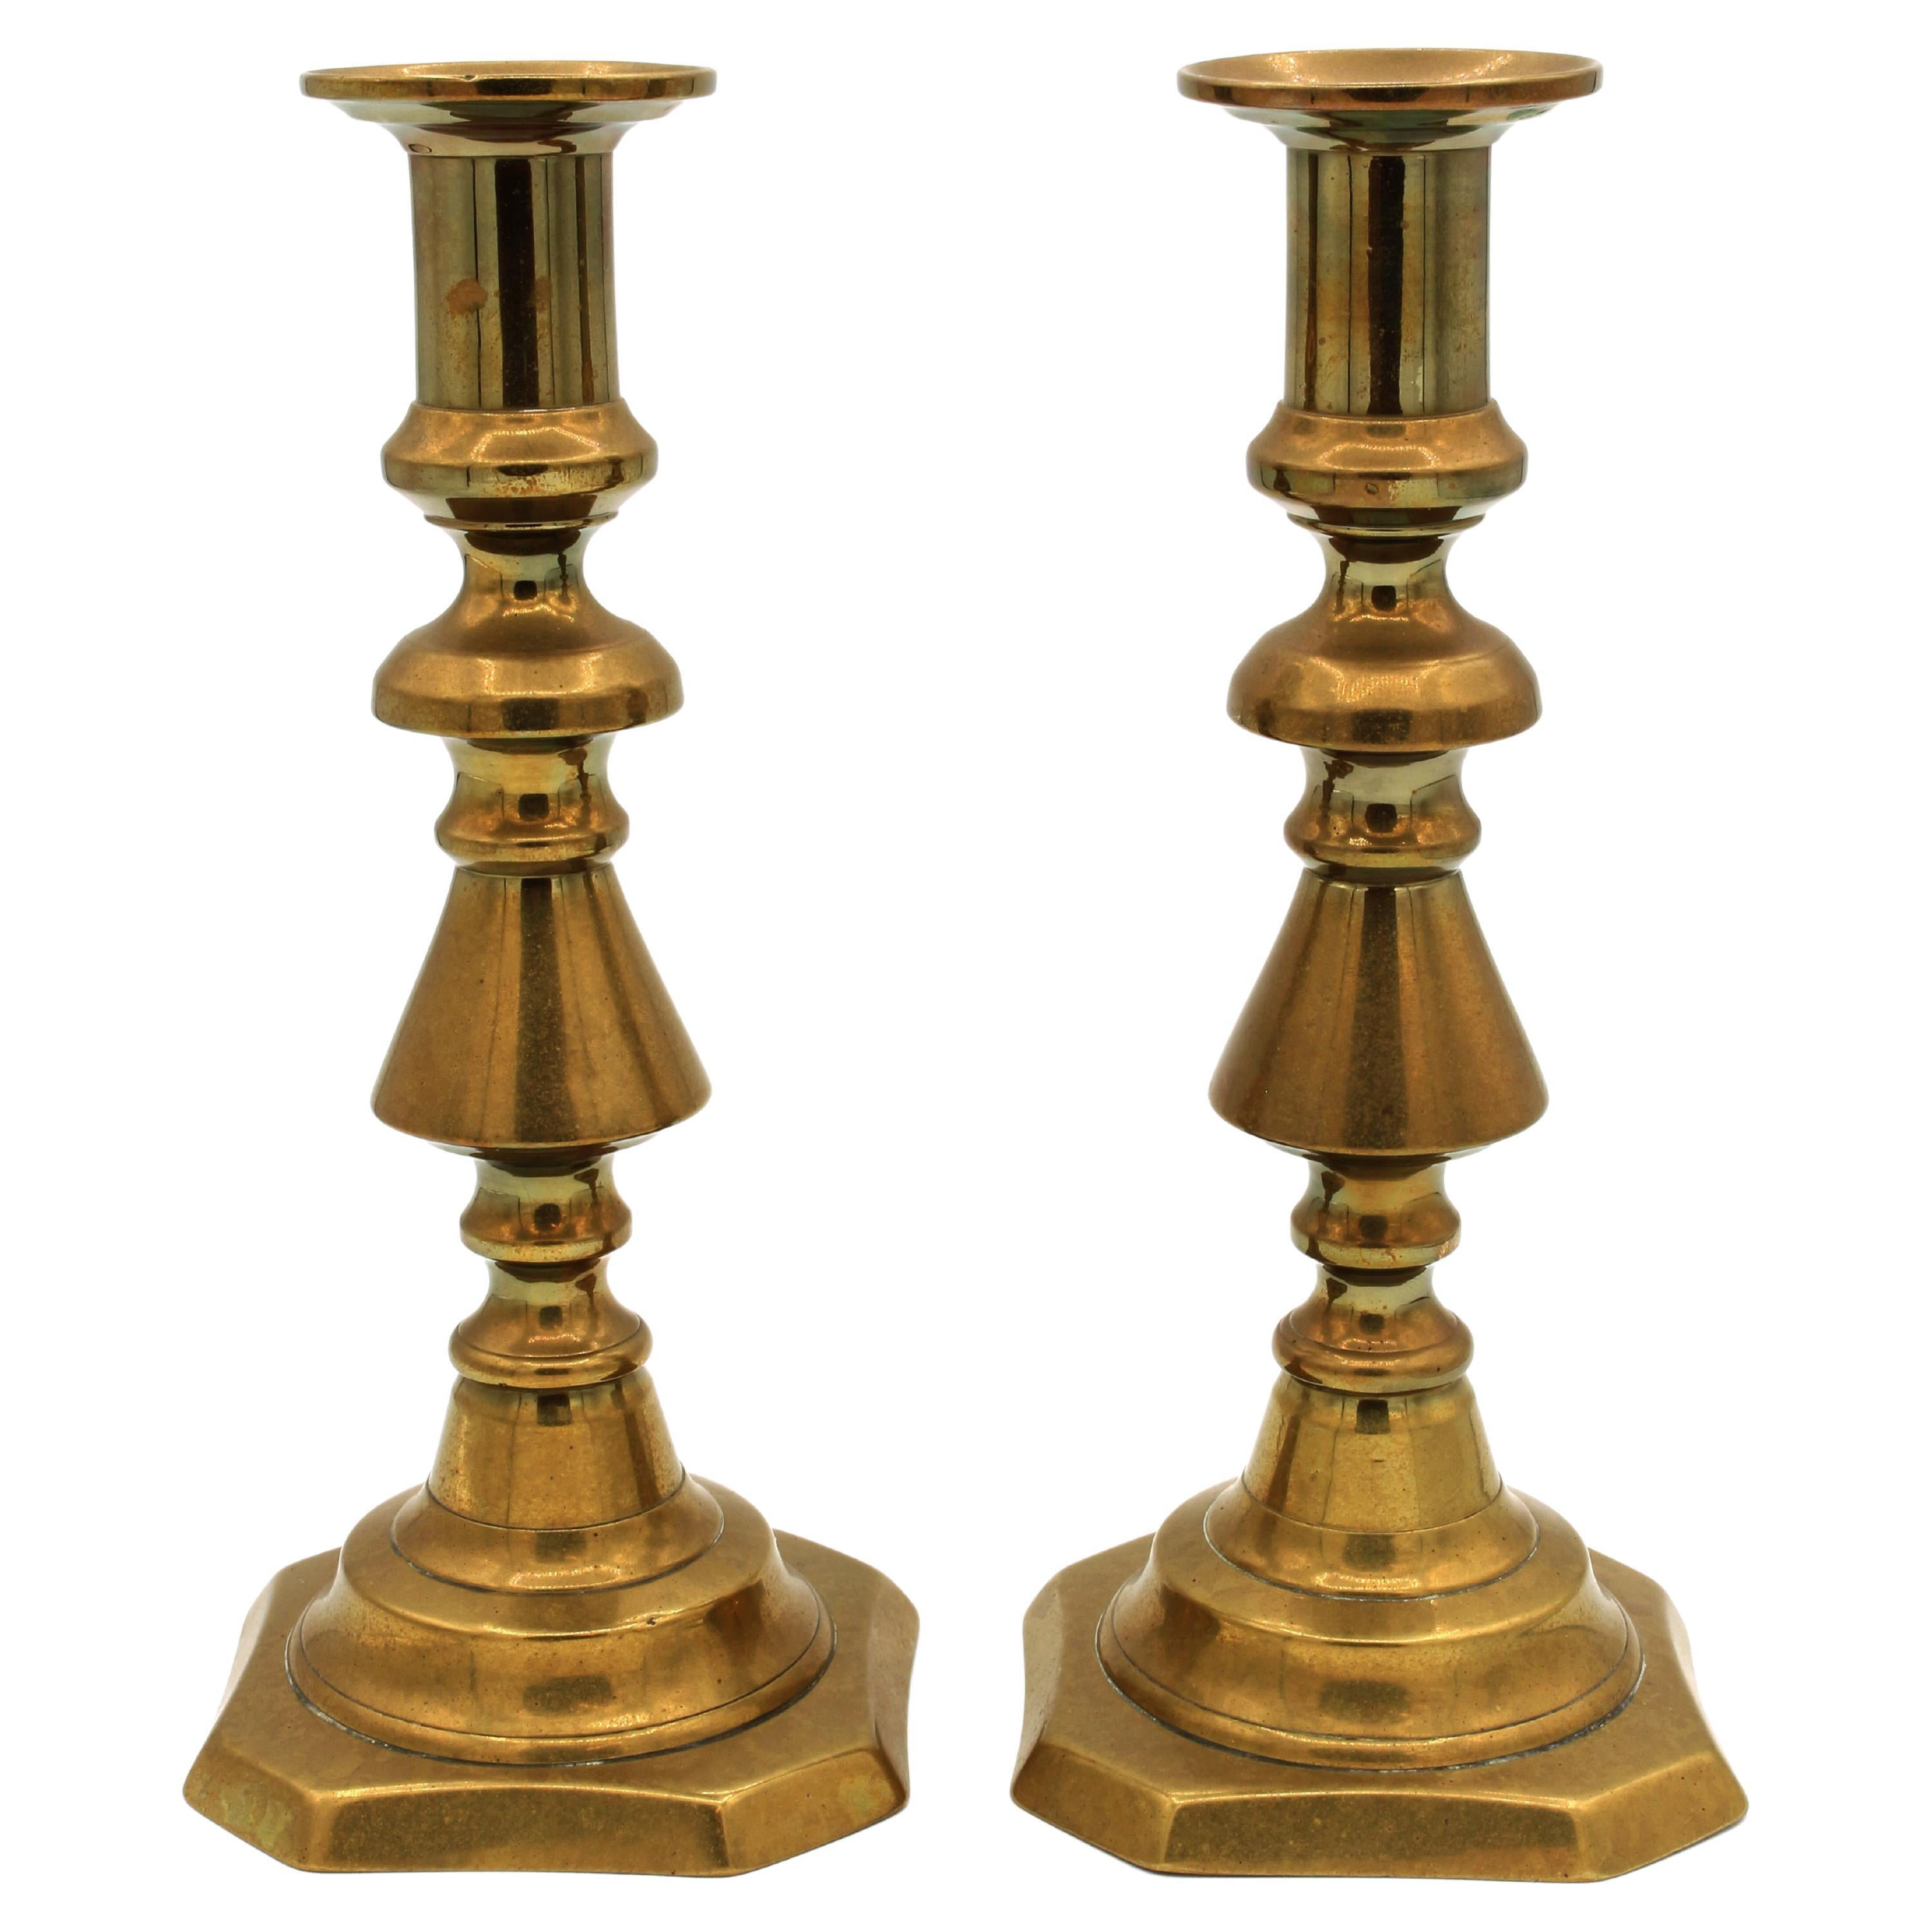 circa 1860-1880 Paire de chandeliers anglais en laiton